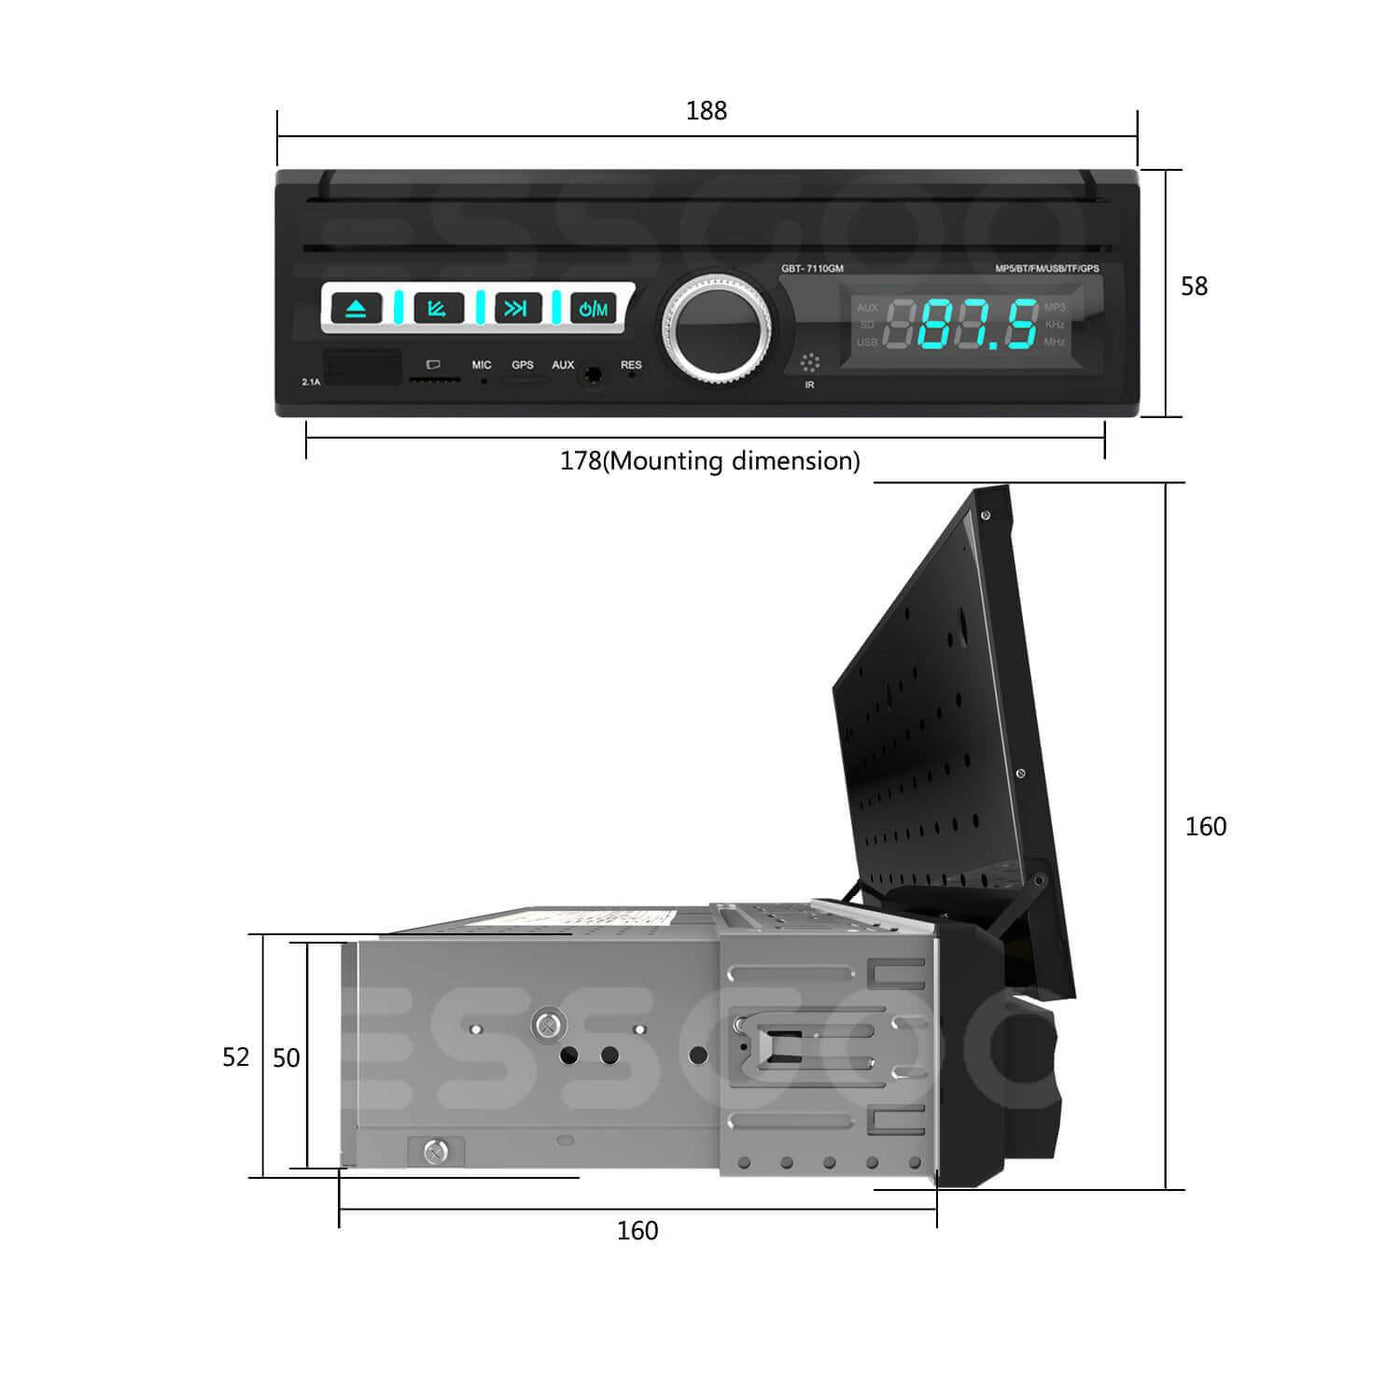 ESSGOO 1 Din Carplay Autoradio Bluetooth AM RDS MP5 Player 5,1 pulgadas  coche Radio estéreo IPS pantalla táctil espejo enlace soporte DVR